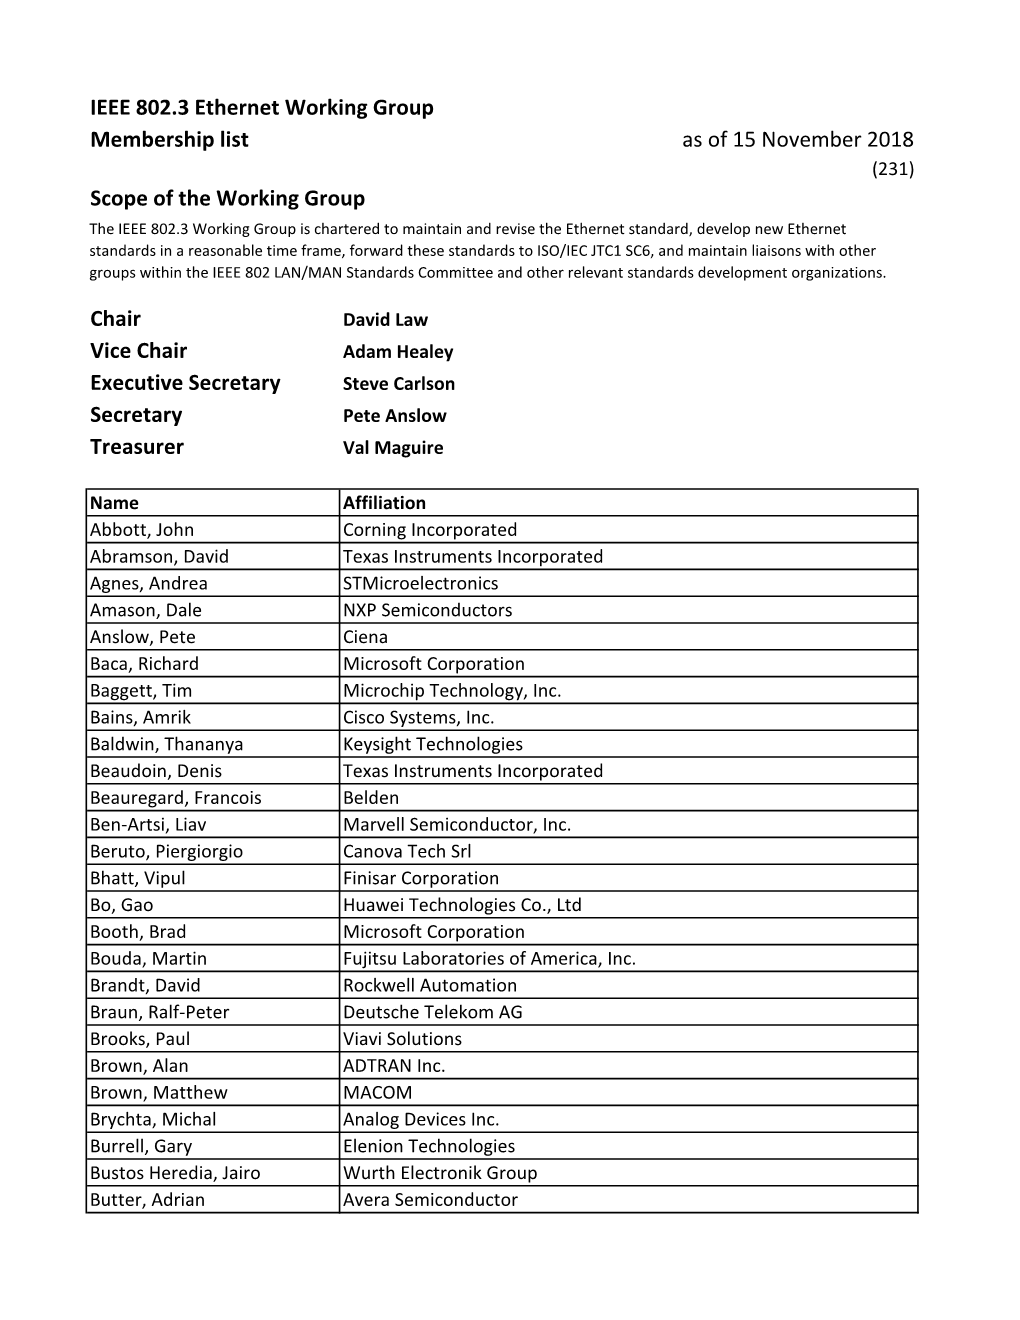 IEEE 802.3 Ethernet Working Group Membership List As of 15